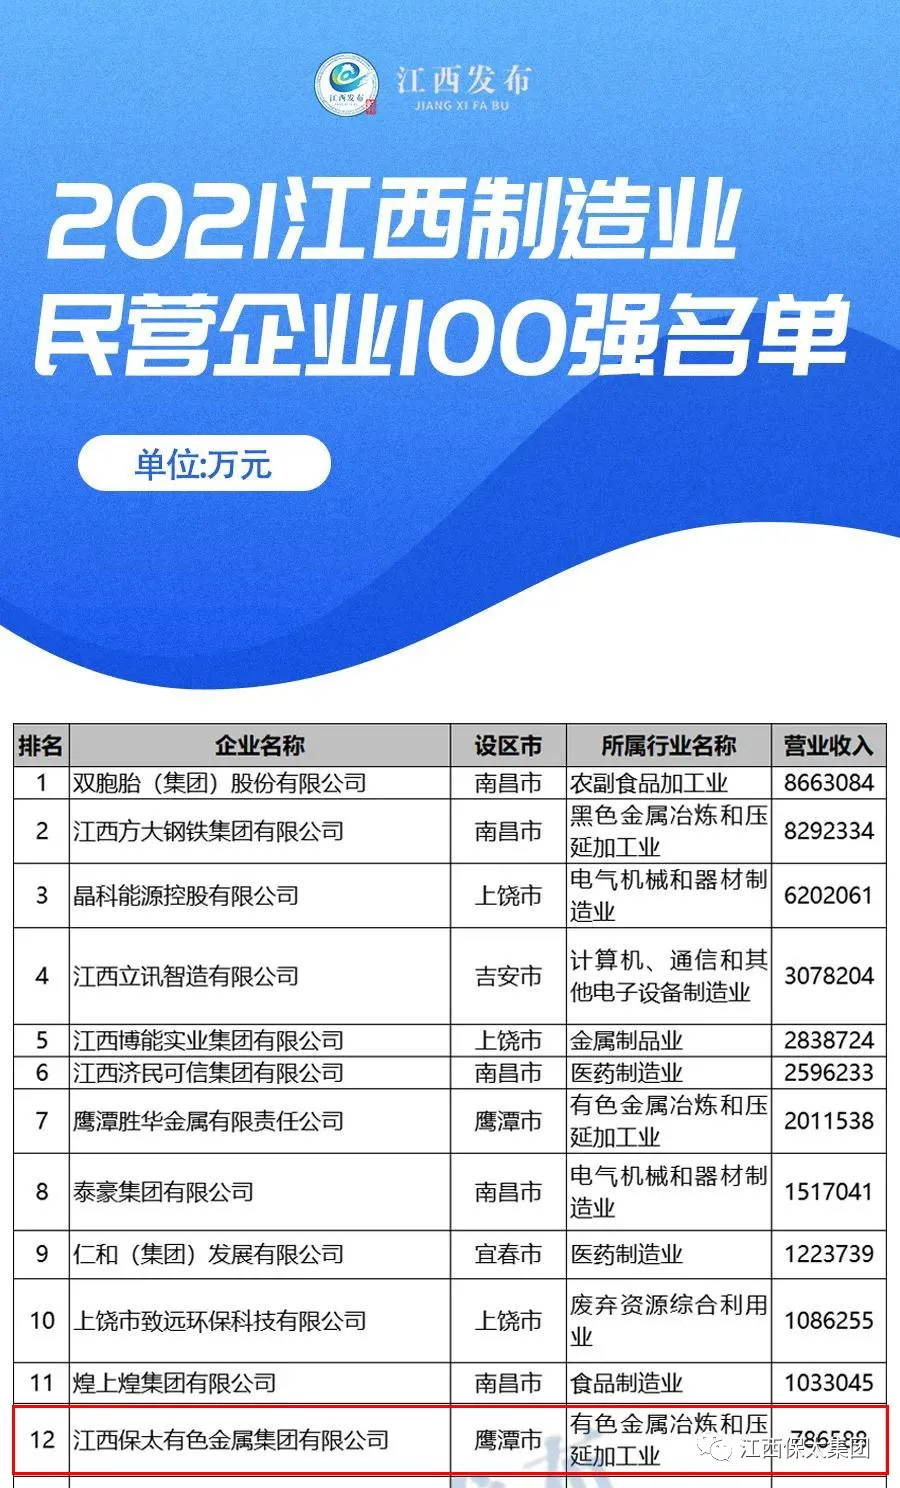 江西保太集团荣获2021年江西企业100强第37位